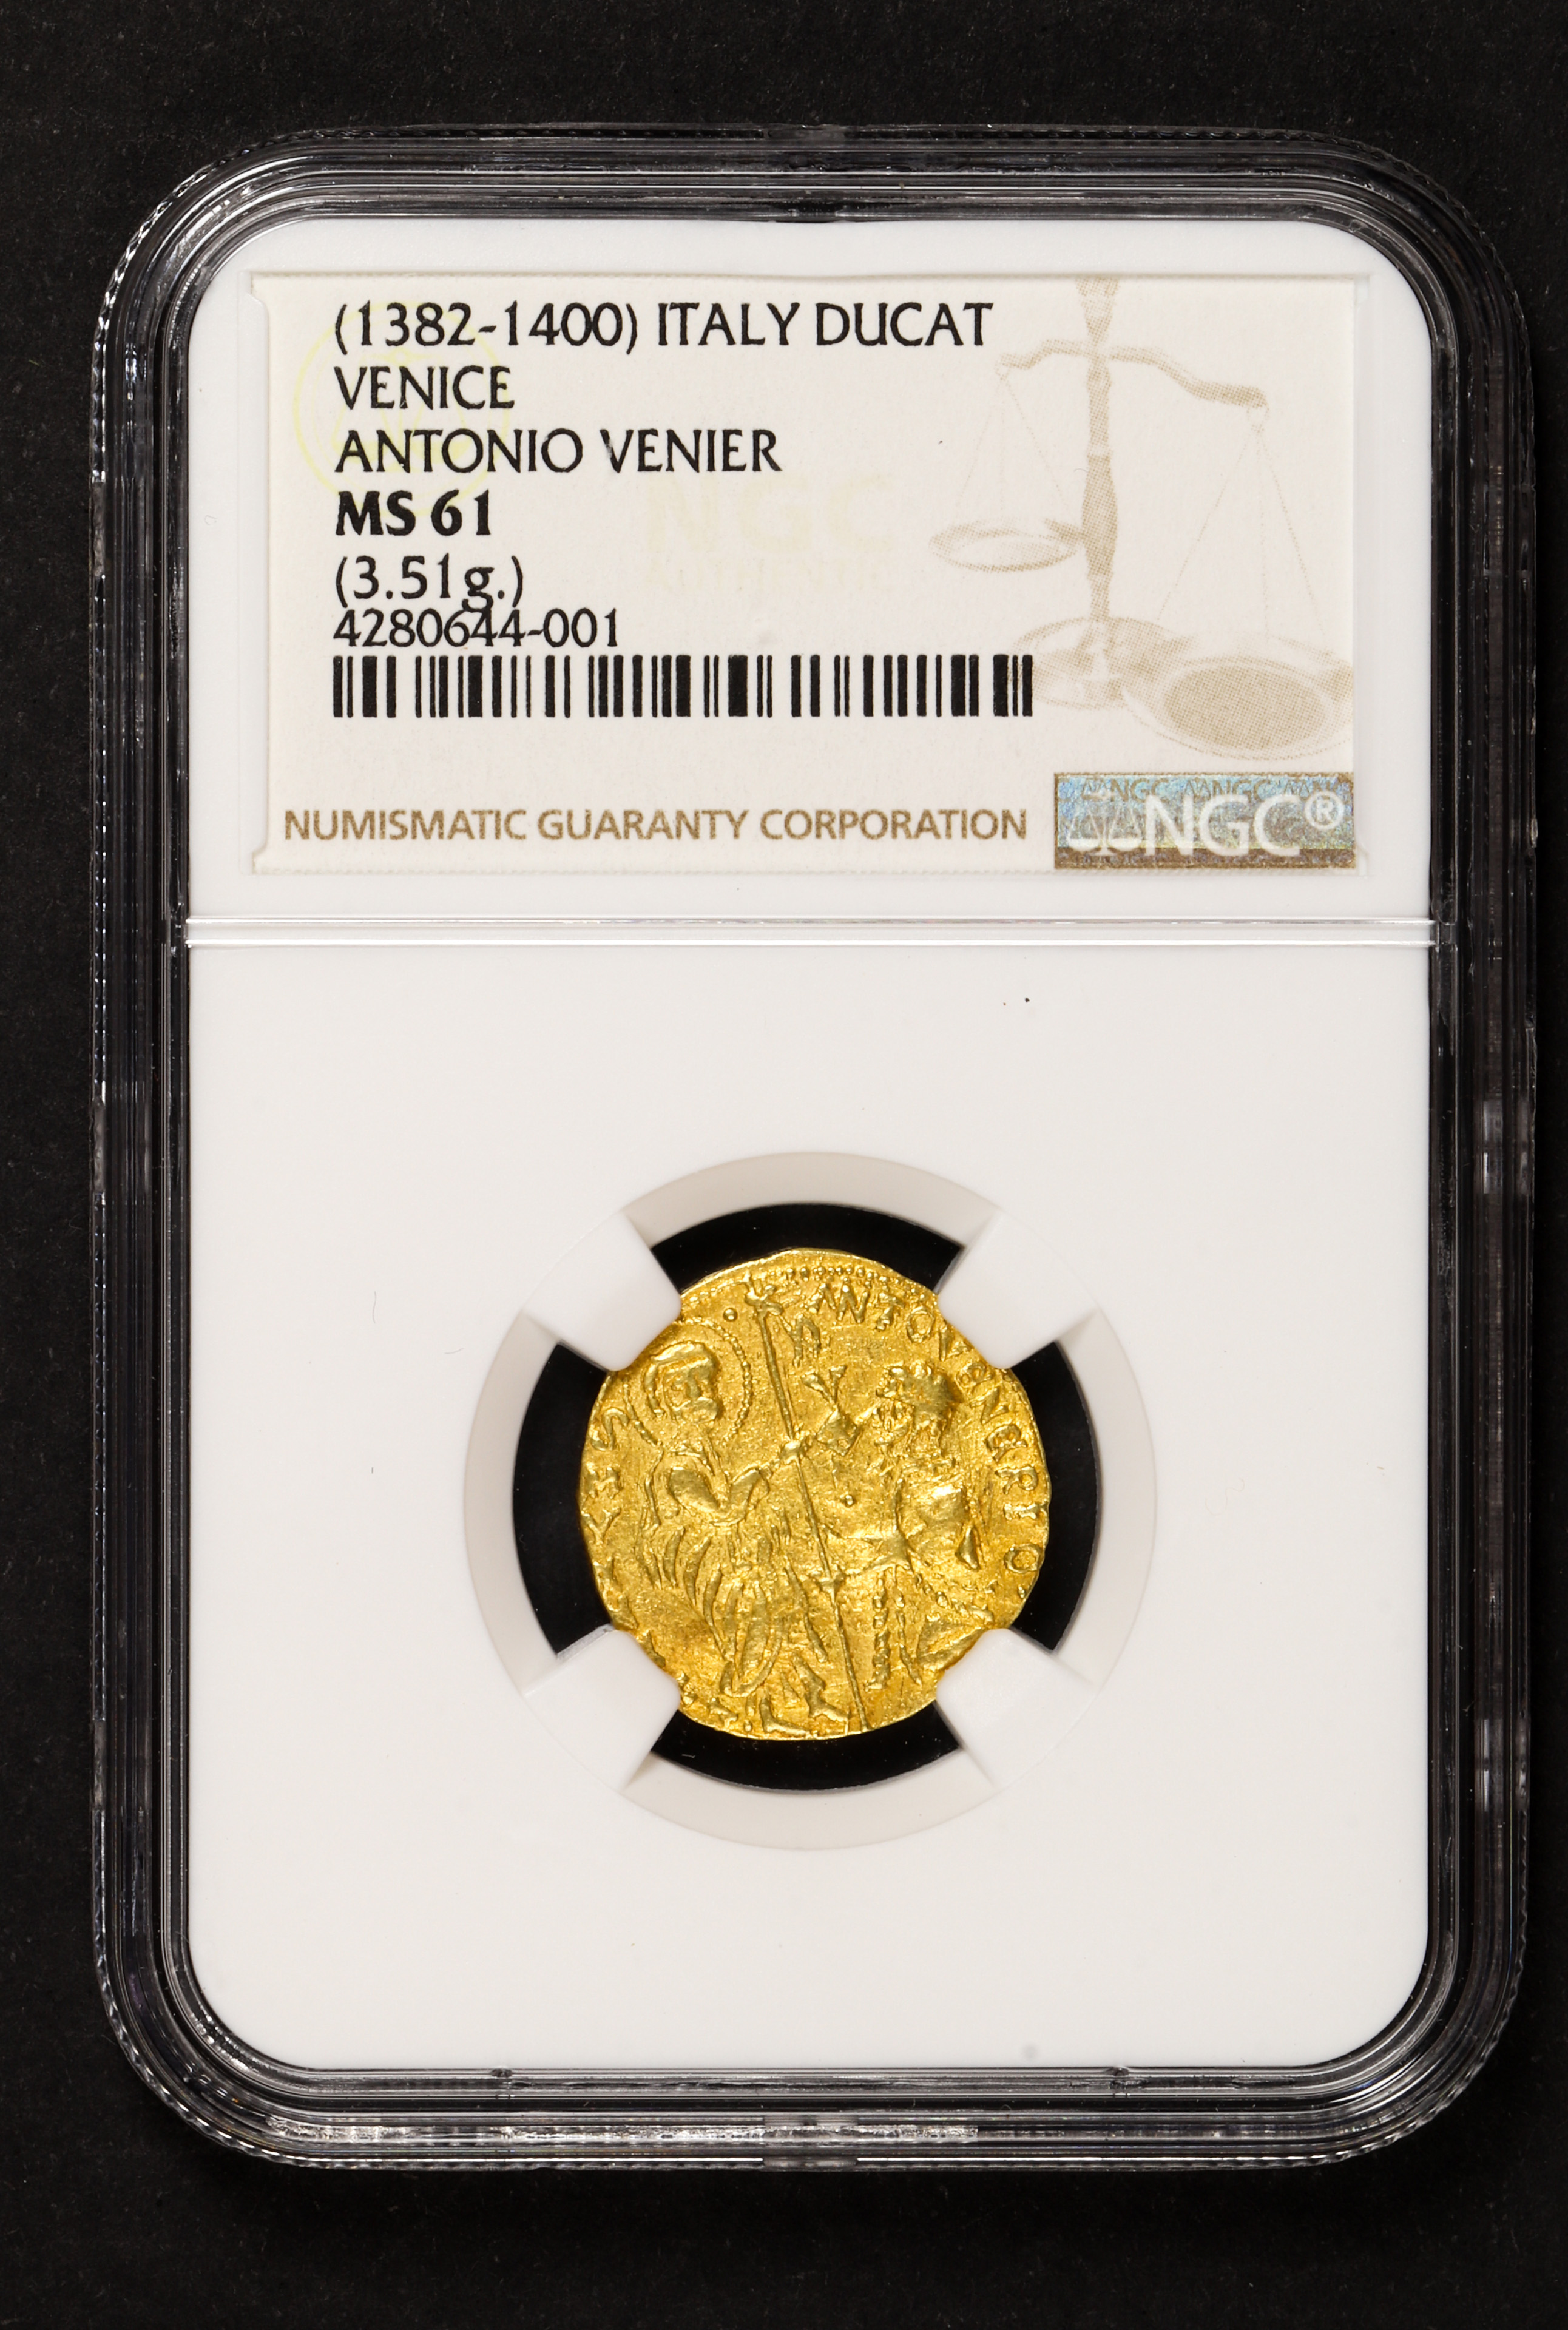 VENICE (1382-1400) GOLD DUCAT ANTONIO